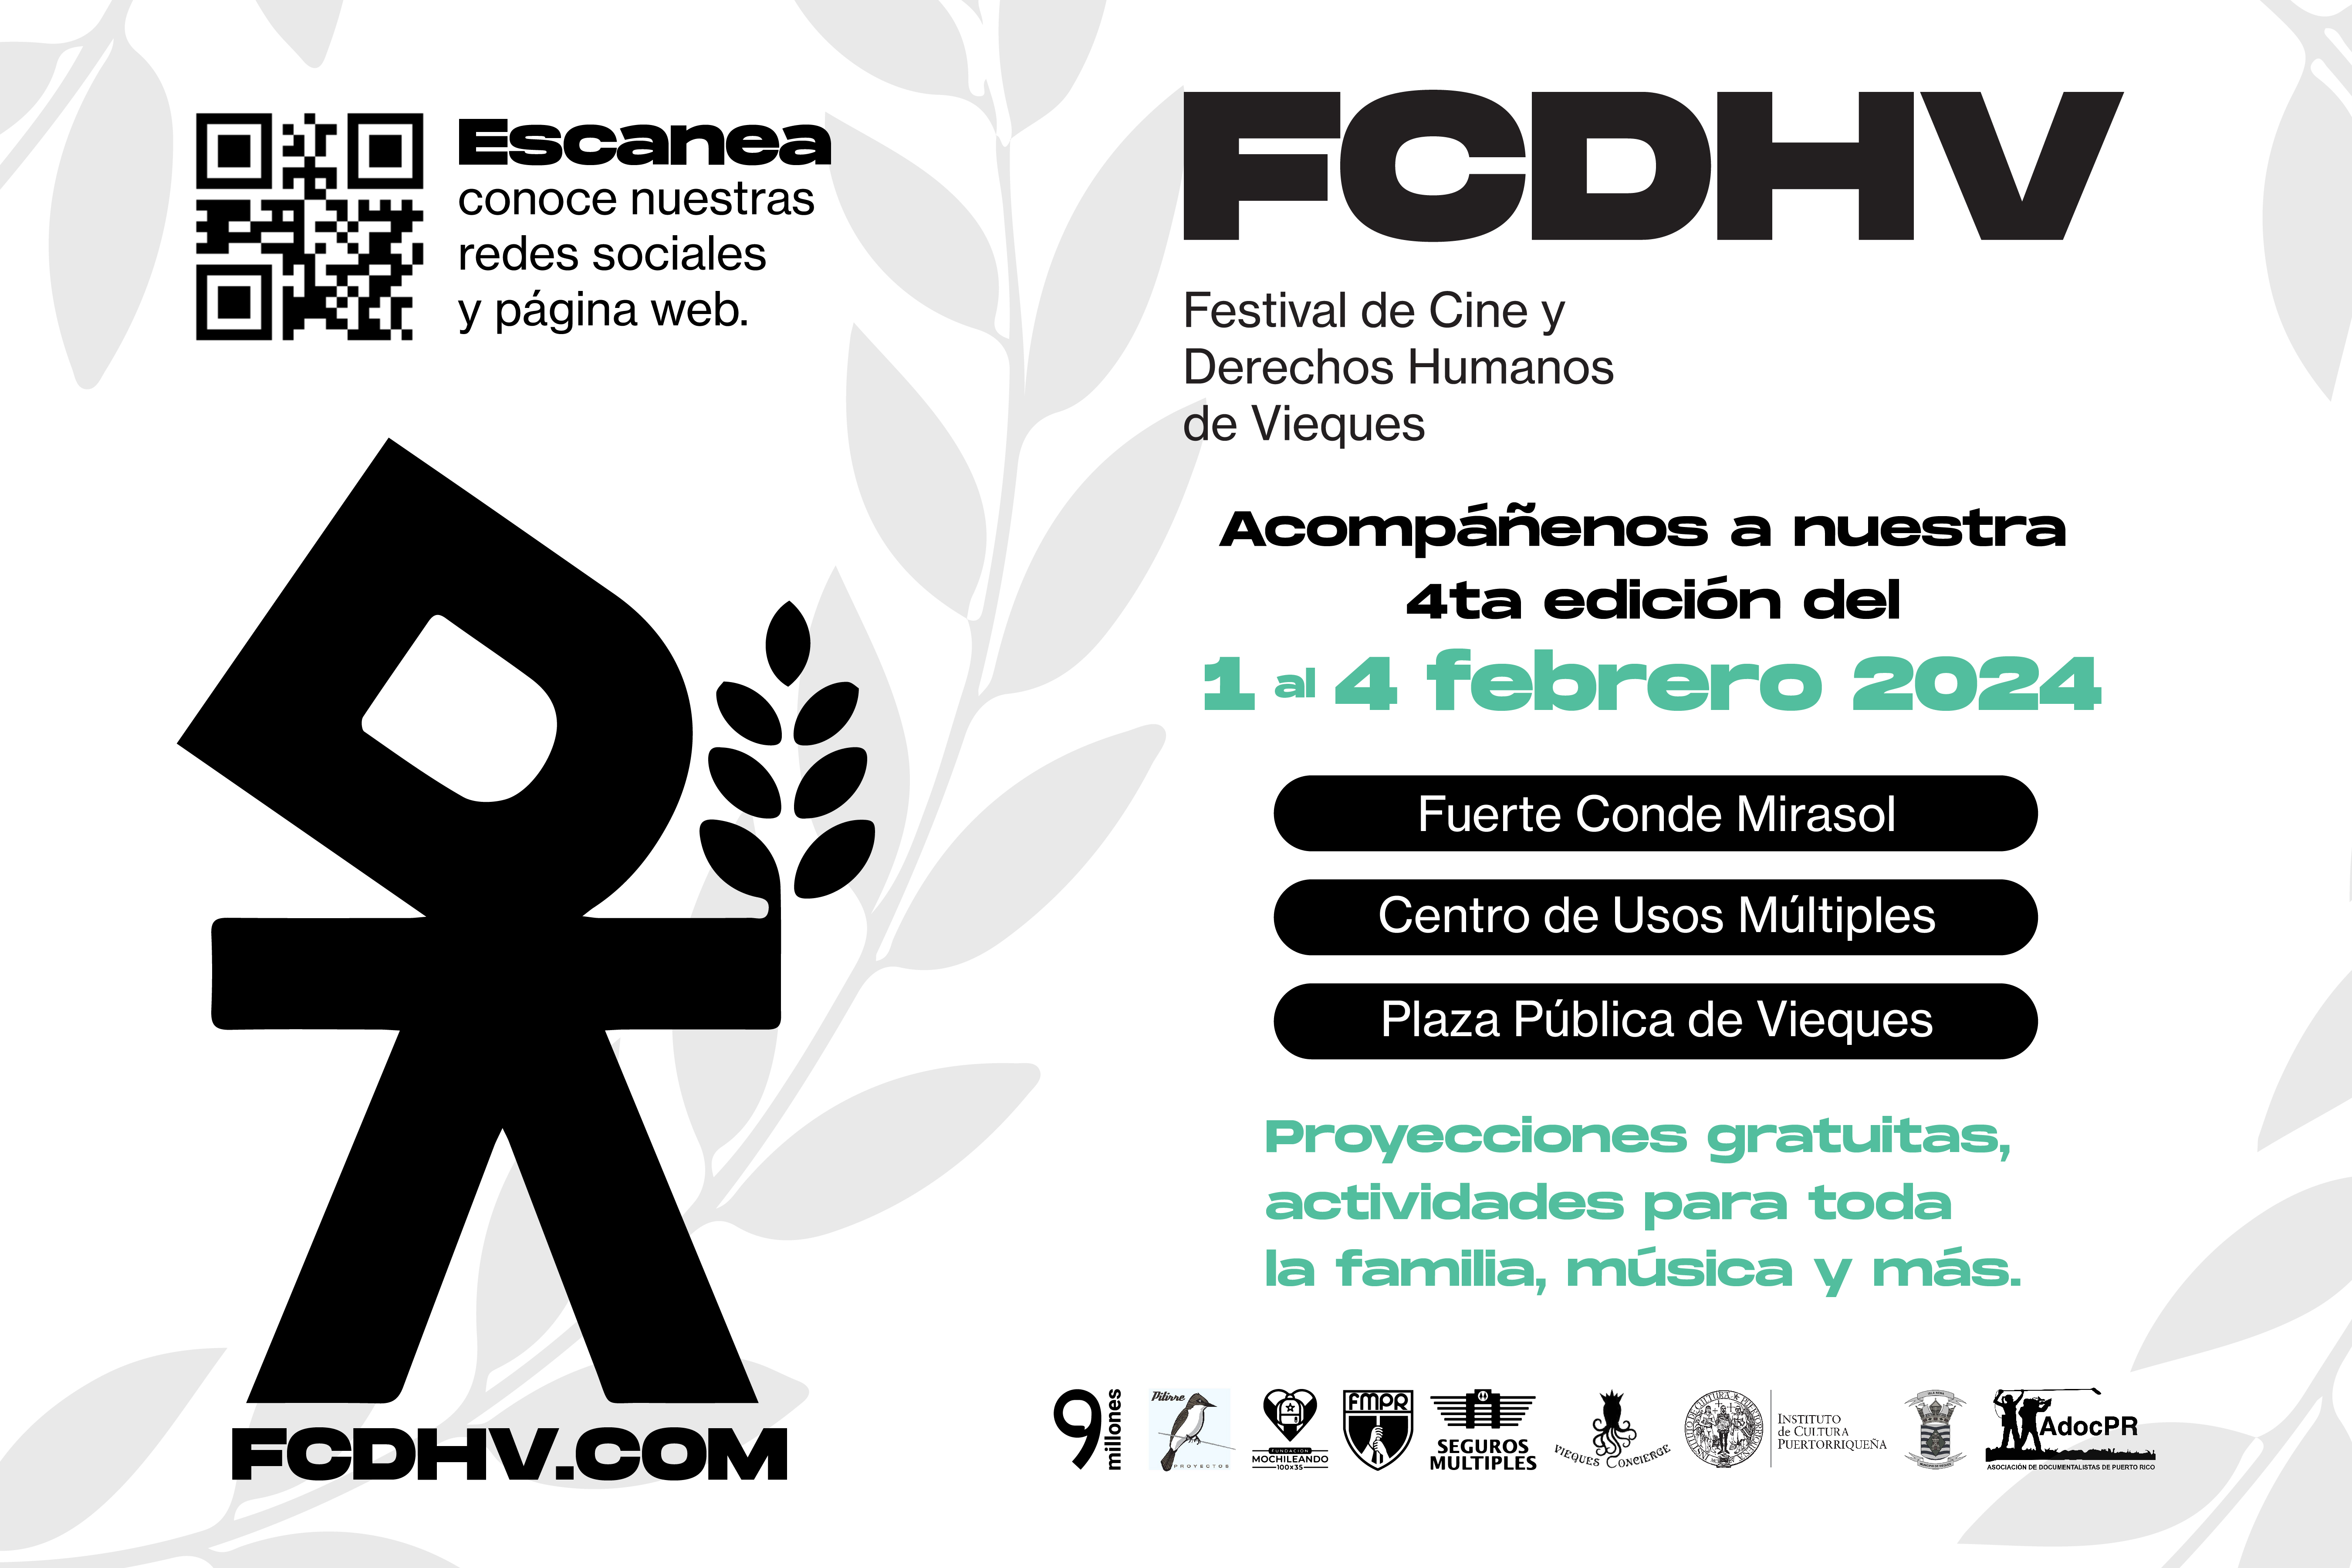 Festival de Cine y Derechos Humanos de Vieques